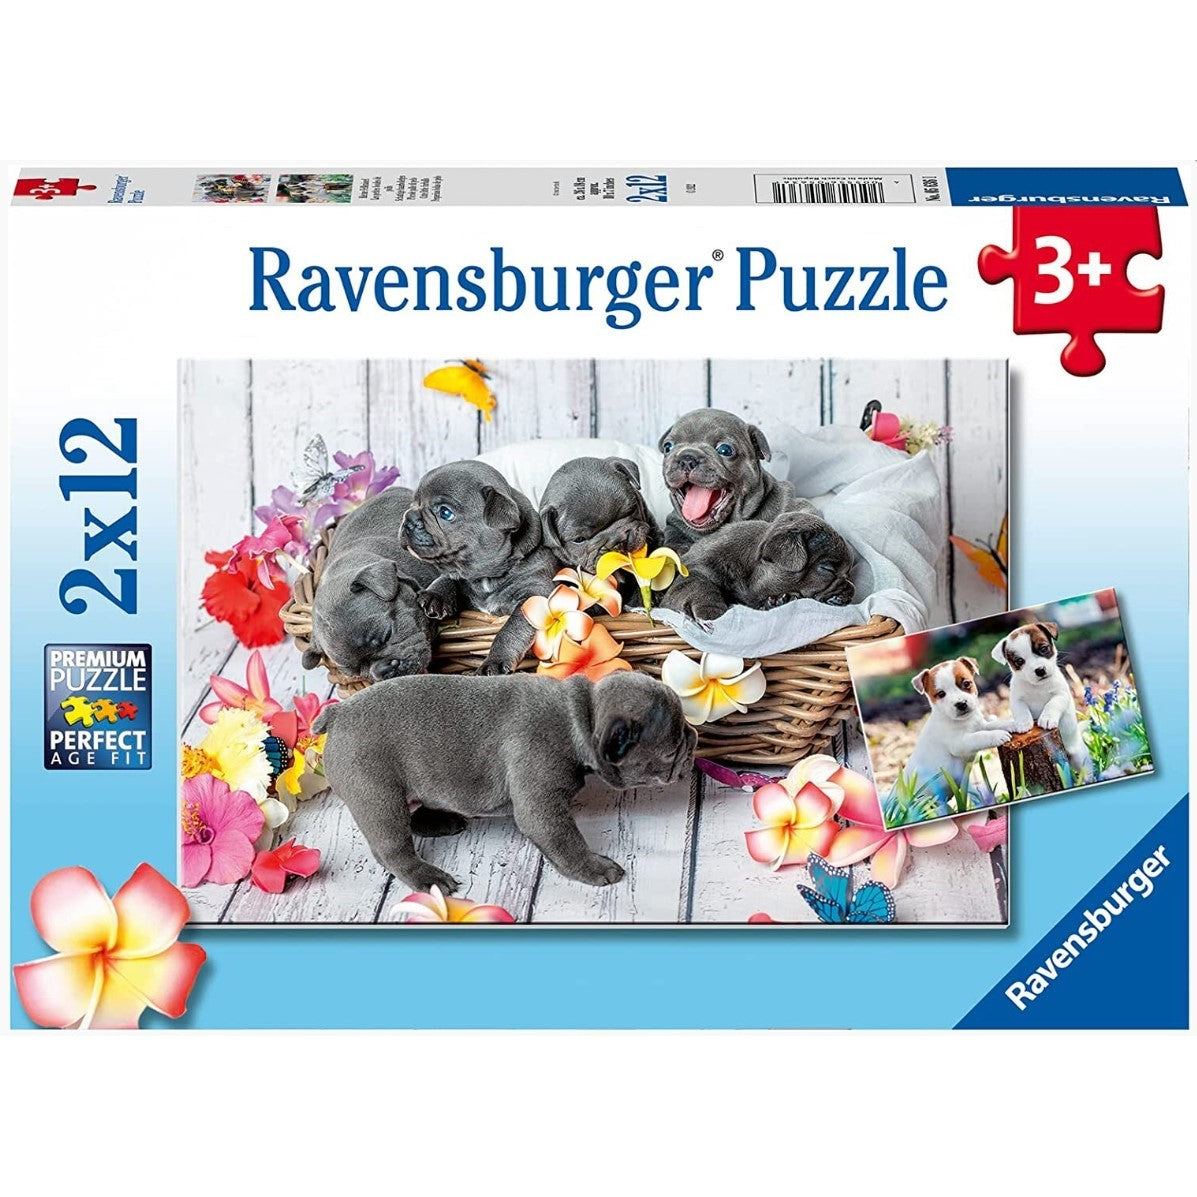 Ravensburger - Cute little furballs 2x12 Piece Jigsaw